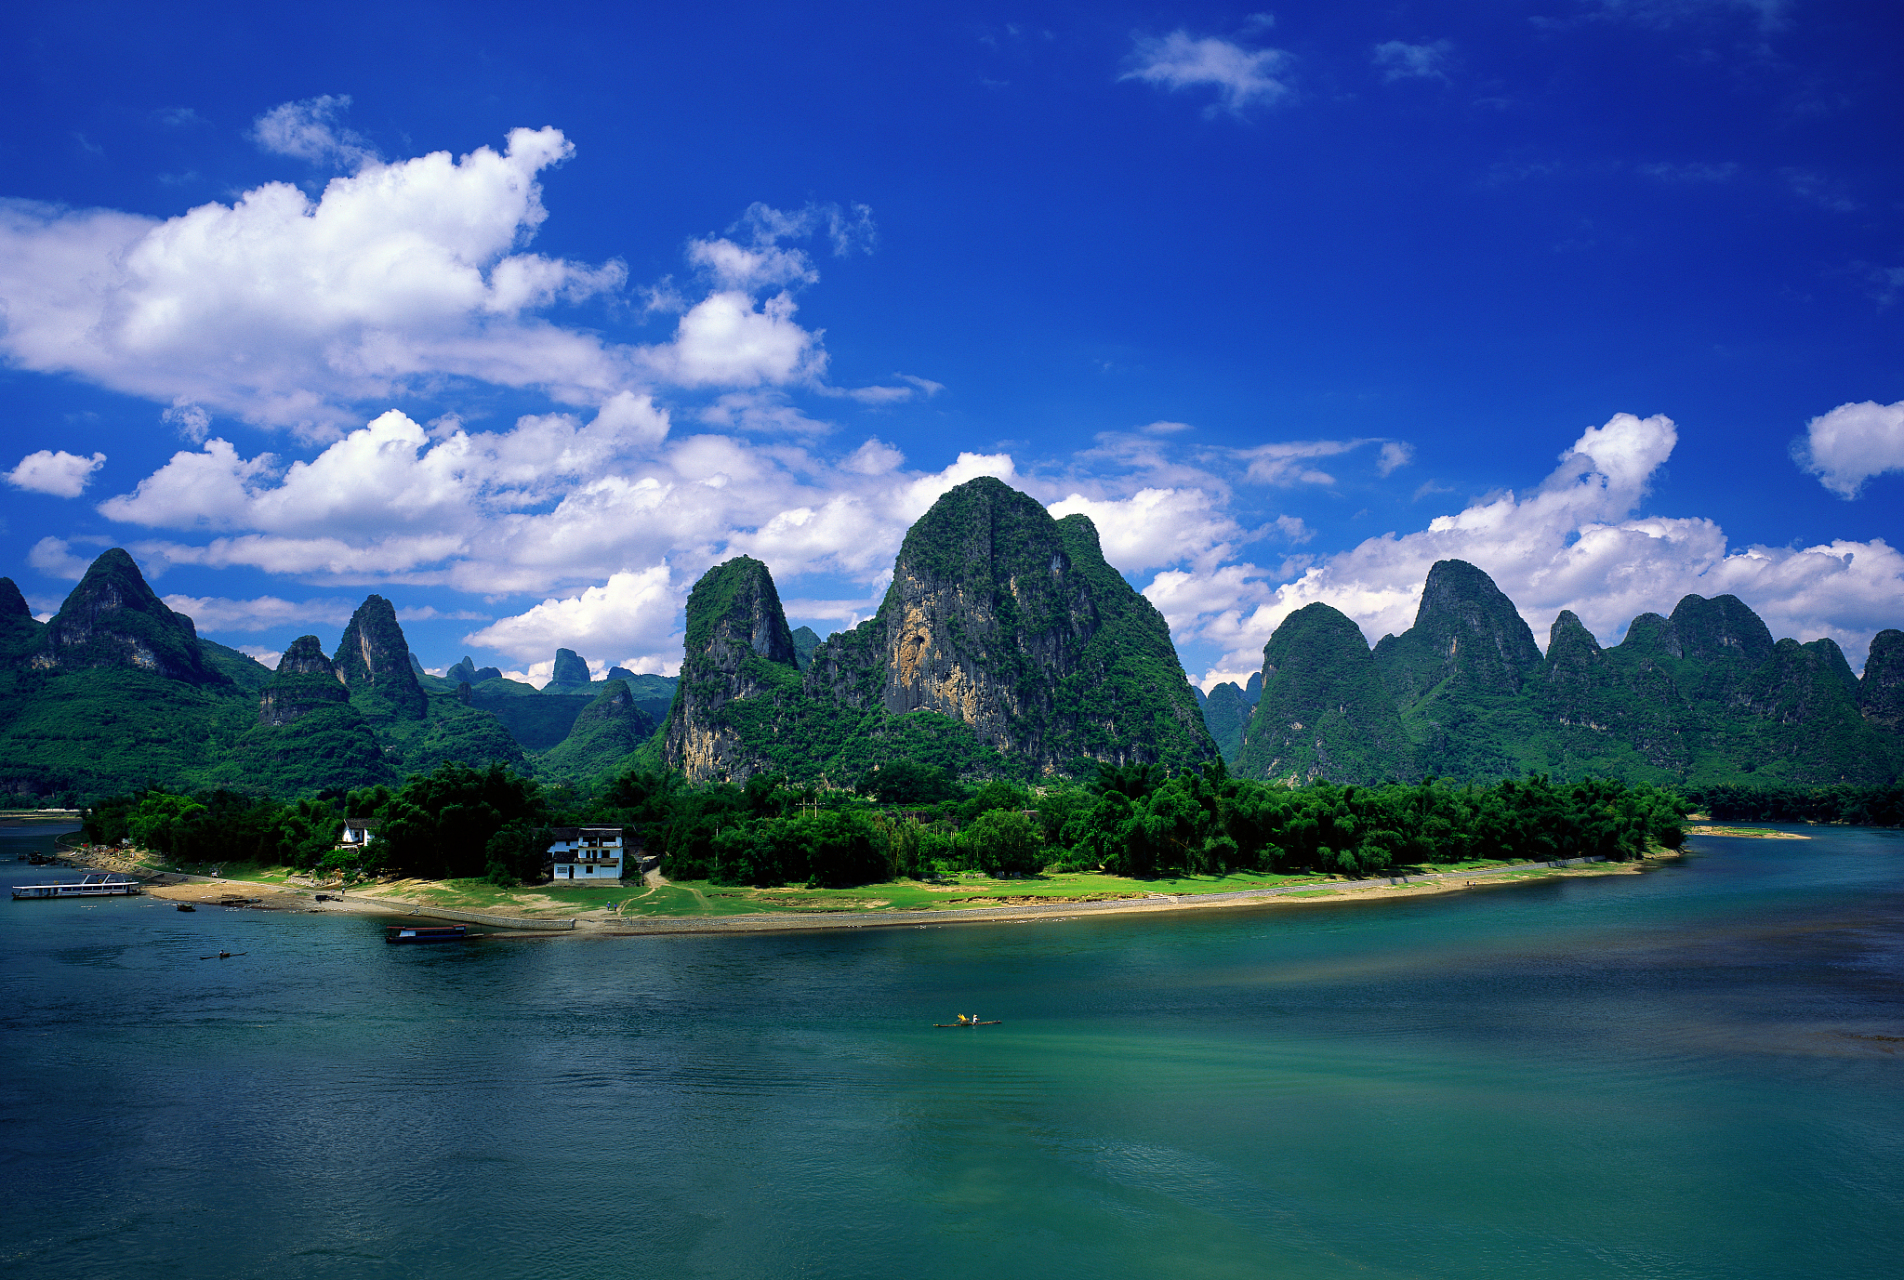 以下是三个值得推荐的桂林旅游地点:  桂林漓江风景区:作为桂林最著名